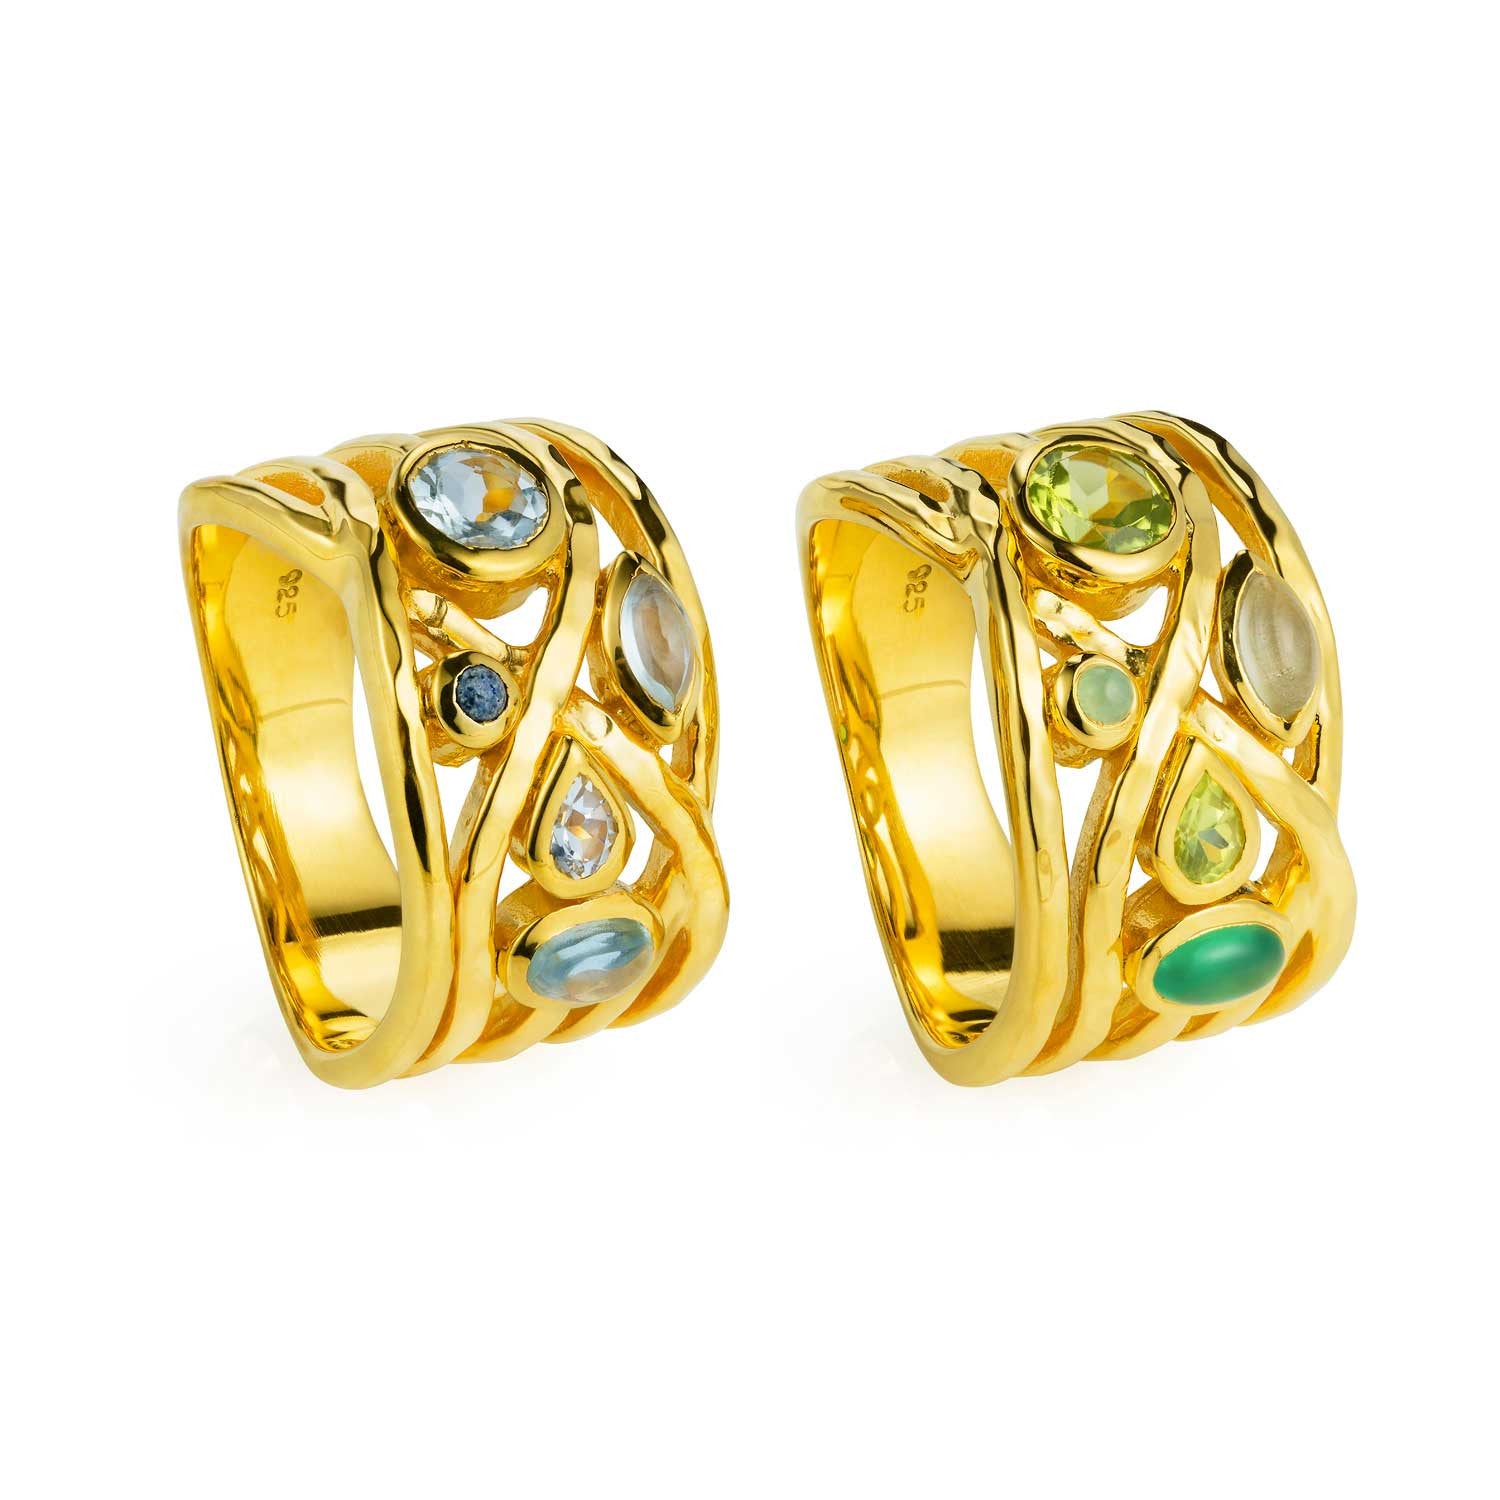 Gold vermeil cocktail ring, gemstone, moonstone, geometric, unique British design, organic